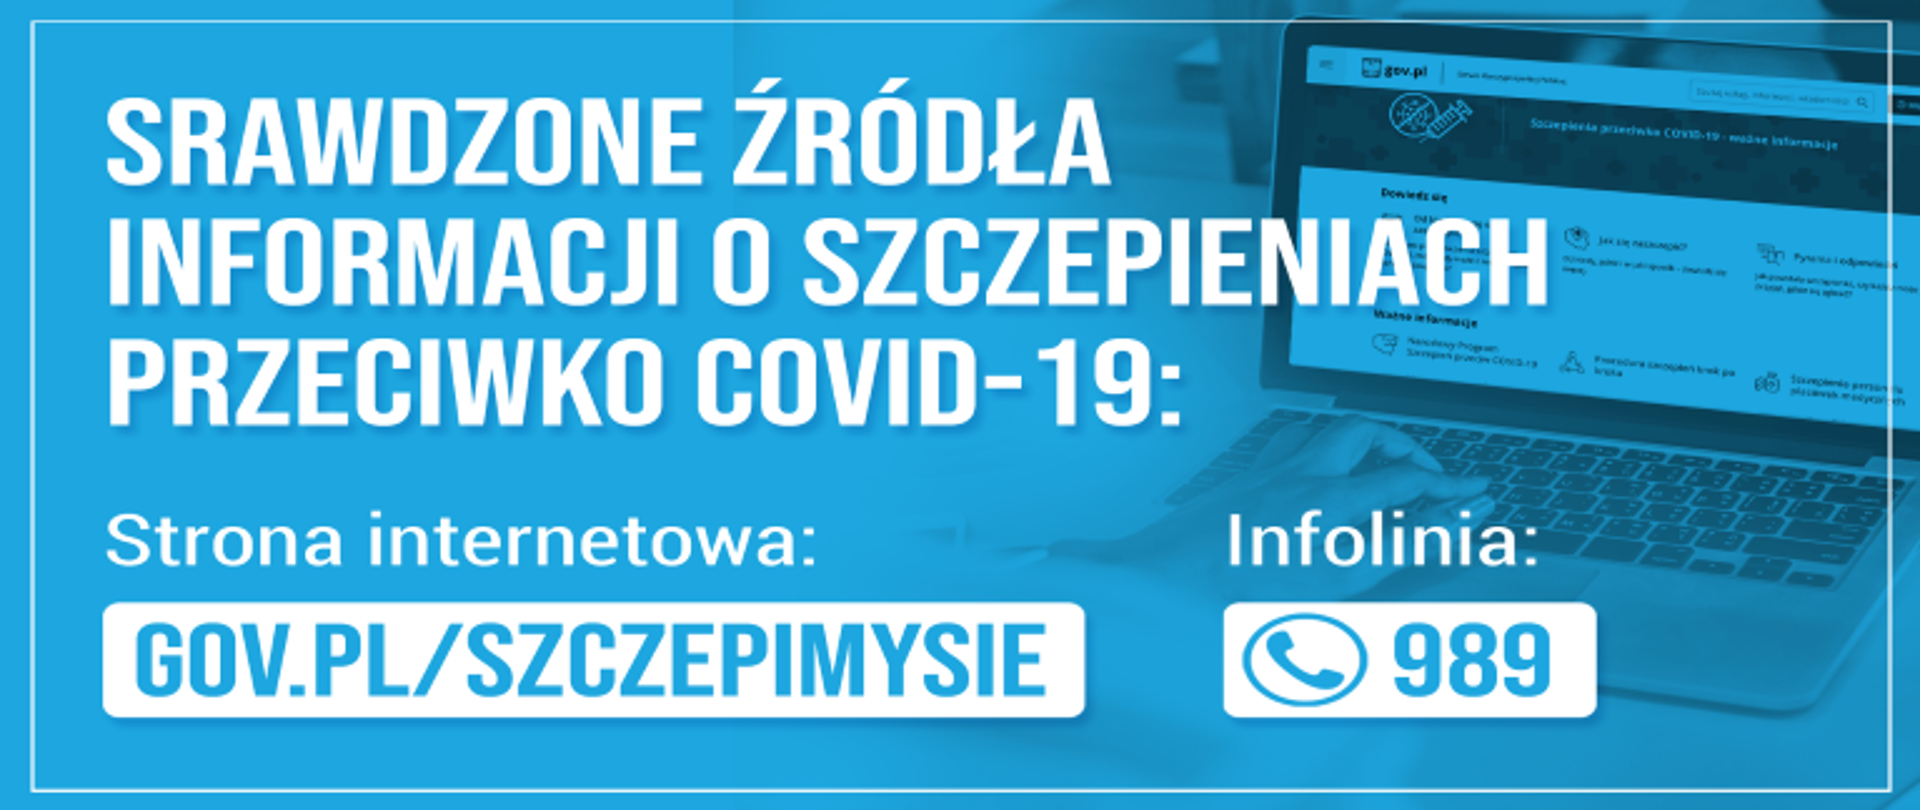 Sprawdzone źródła informacji o szczepieniach przeciwko COVID-19 infolinia 998 strona internetowa gov.pl/szczepimysie